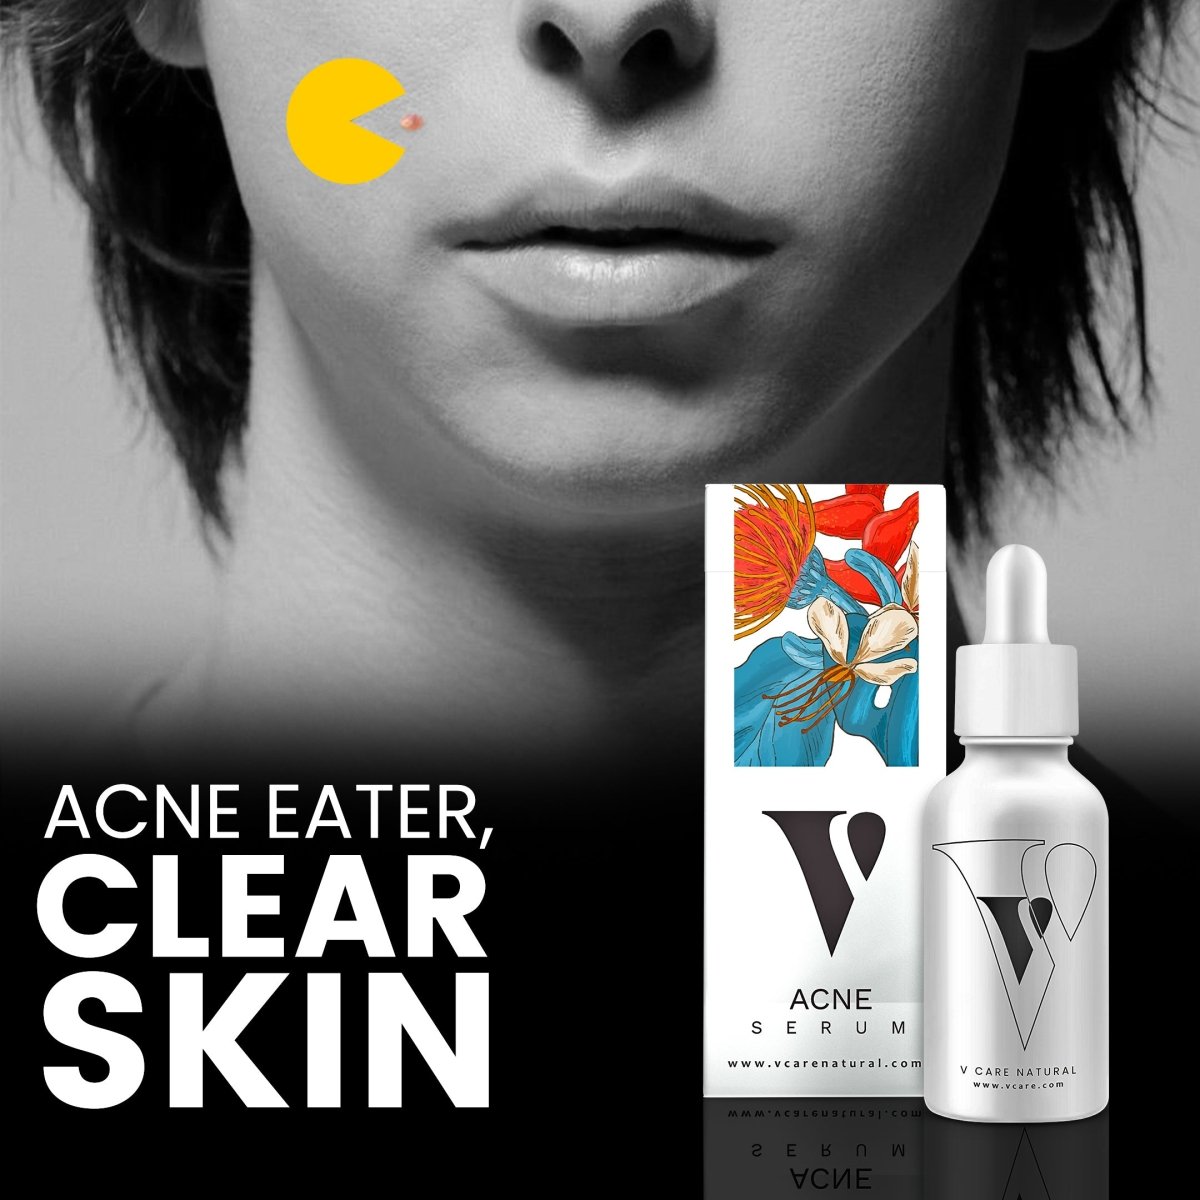 Acne Serum - Vcare Natural